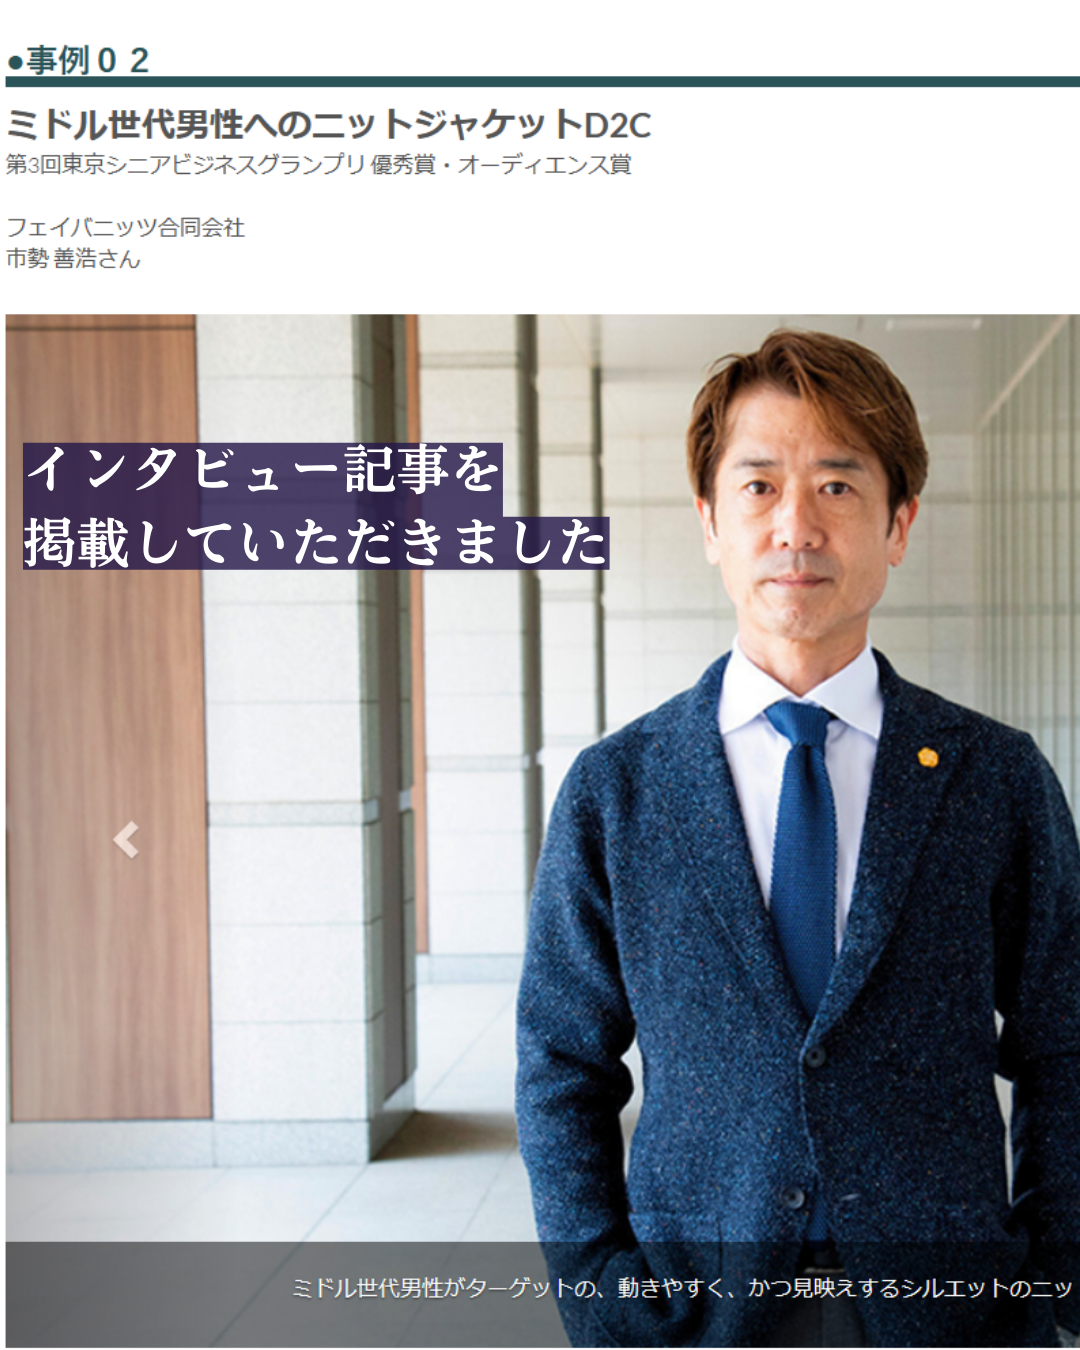 【第3回東京シニアビジネスグランプリ】ファイナリストのインタビュー記事を掲載していただきました